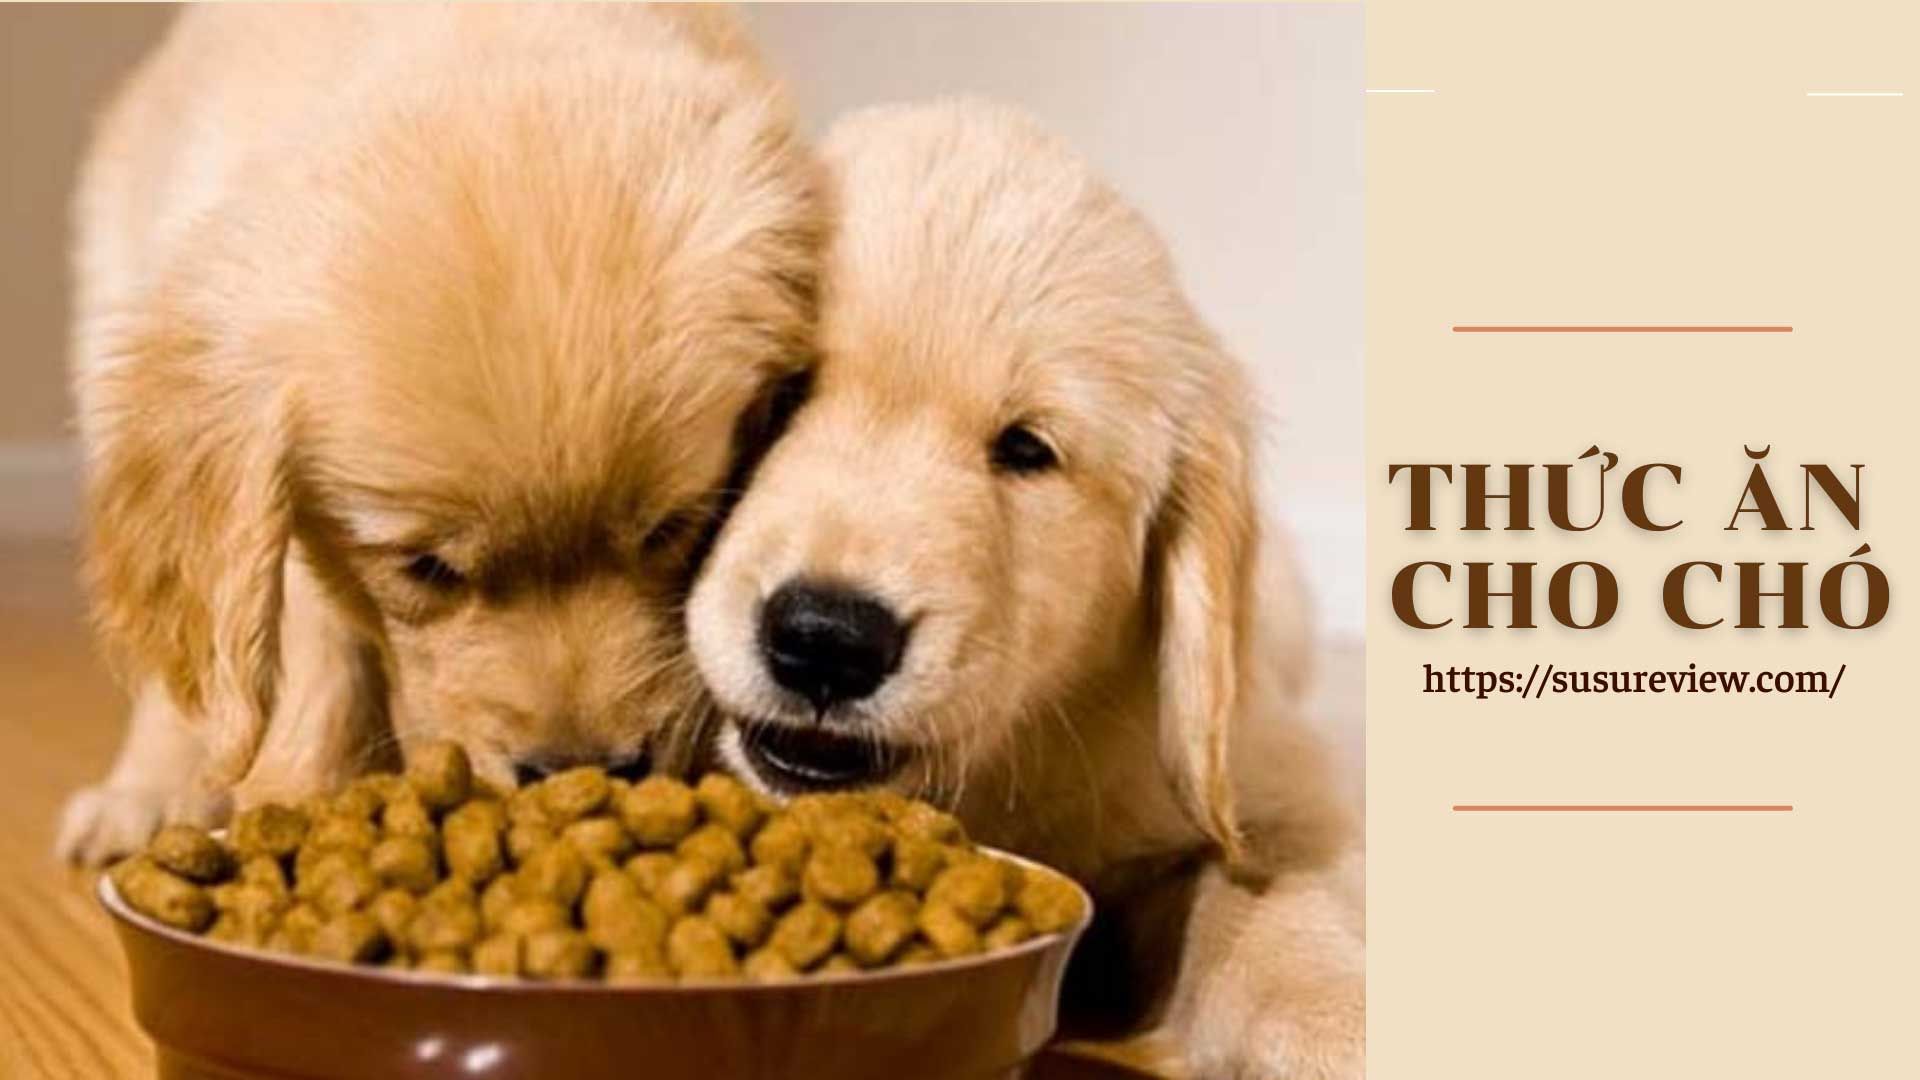 Tìm hiểu về gói thức ăn cho chó - Hướng dẫn chọn lựa và sử dụng hiệu quả